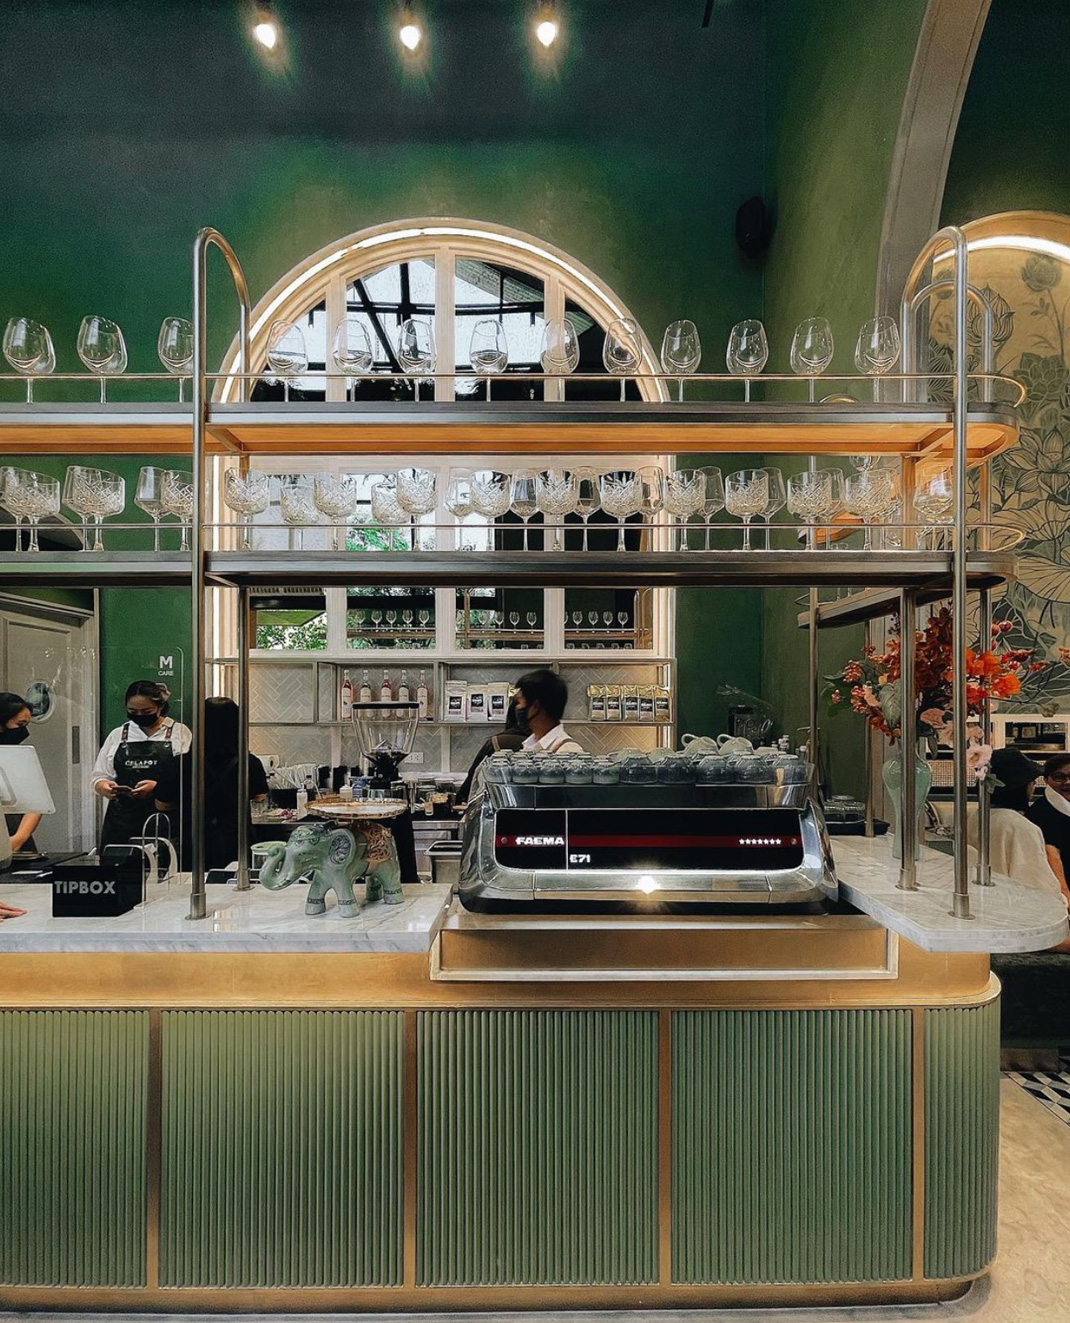 咖啡店X 画廊Celapot Café x Gallery 泰国 咖啡店 画廊 绿色 拱形 格栅 复古 马赛克 logo设计 vi设计 空间设计